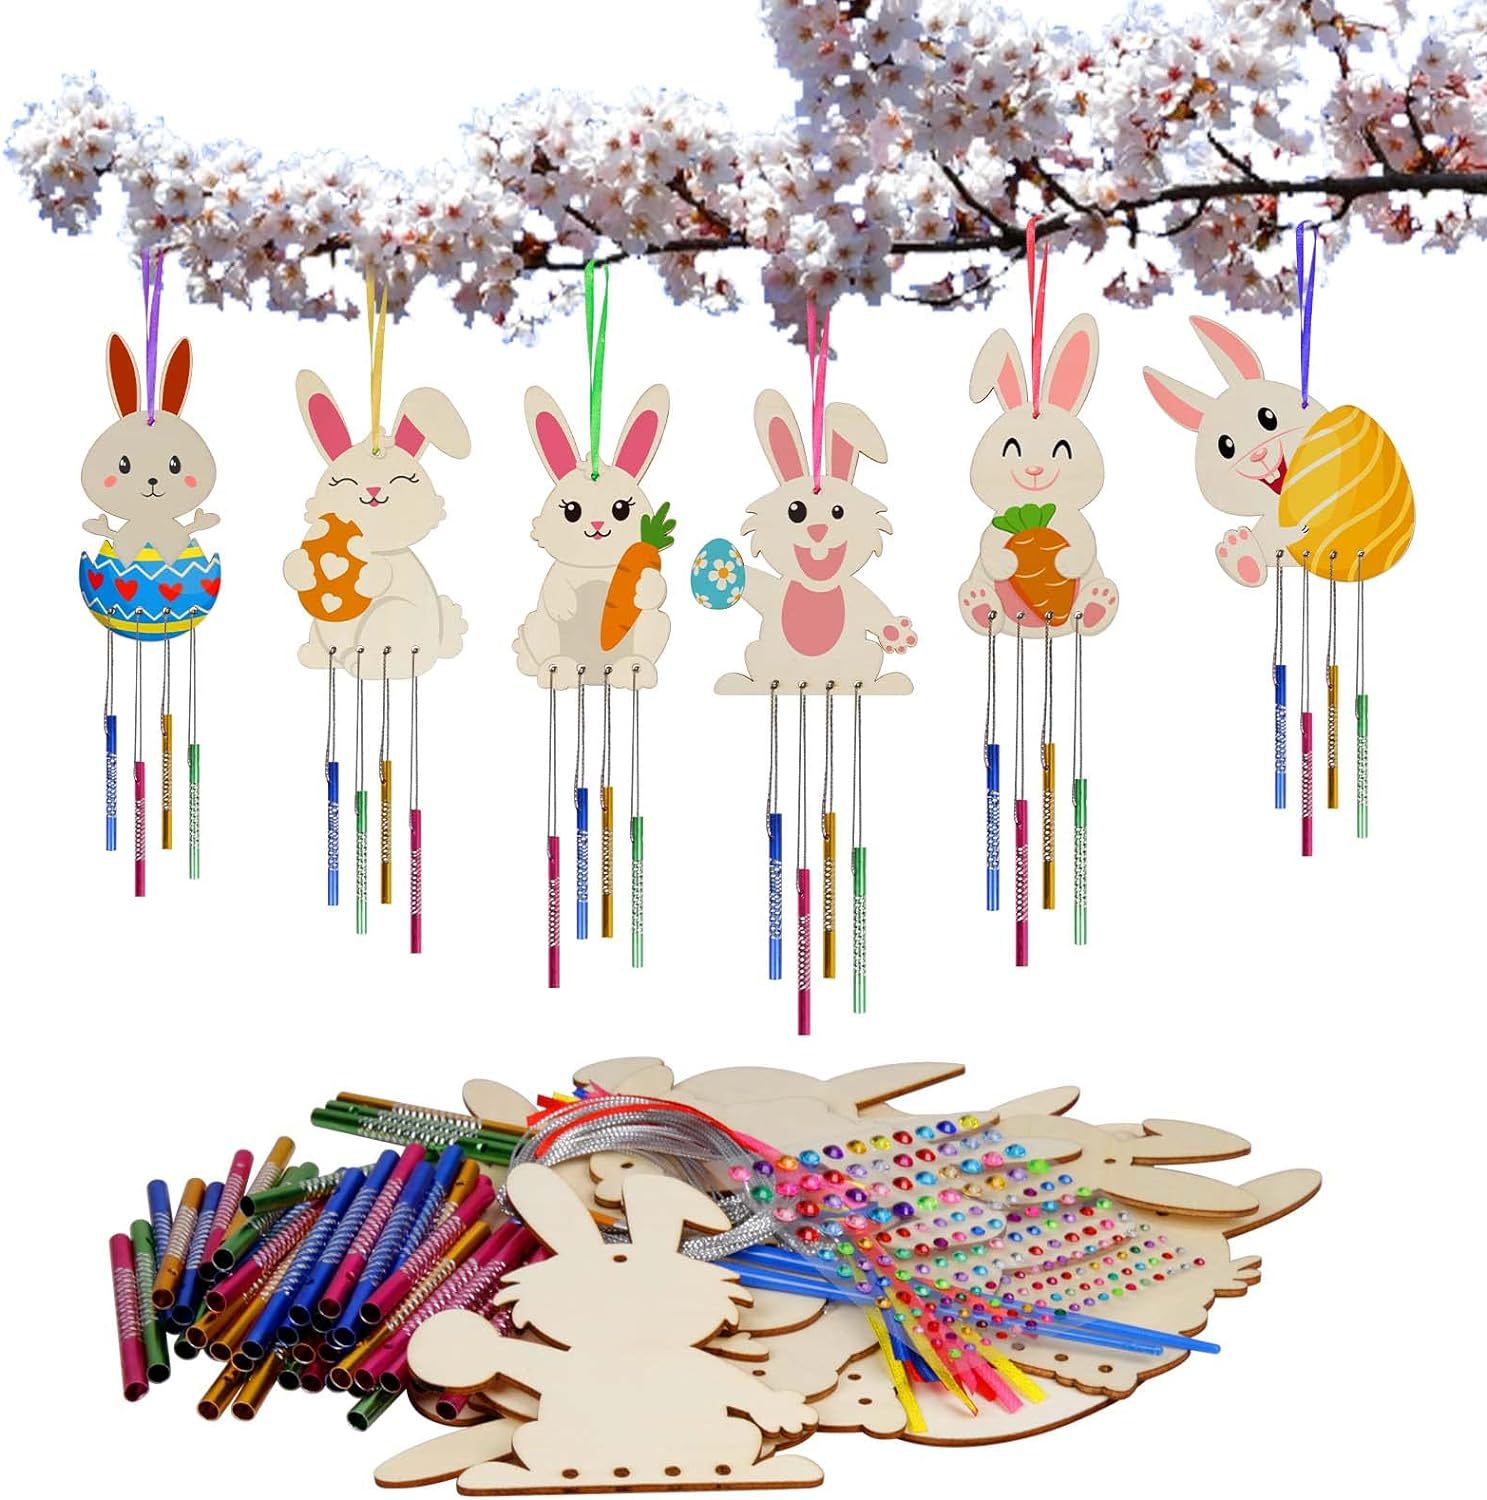 未完成的兔子风铃工艺套件DIY风铃儿童绘画工艺饰品花园家居装饰